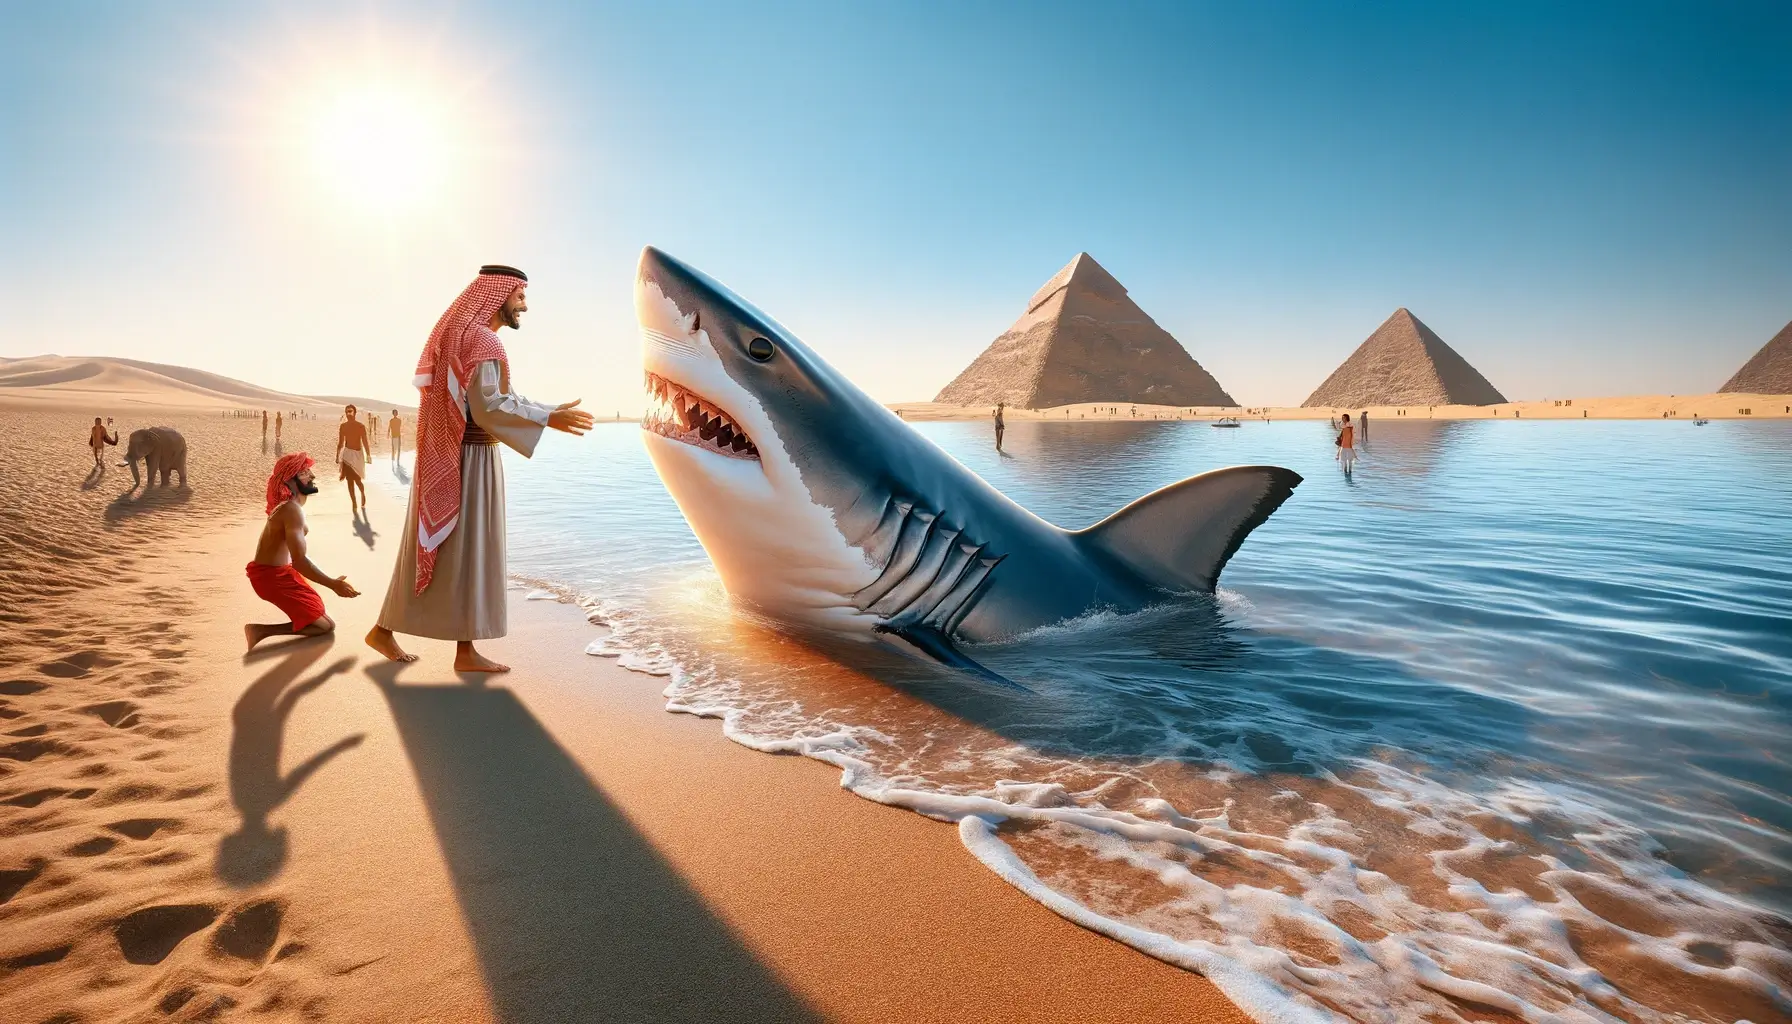 Сюрреалистическая сцена дружбы акулы и человека на пляже в Египте. Сцена включает в себя такие знаковые египетские элементы, как пирамиды на заднем плане. Смело присмотритесь к ним поближе!